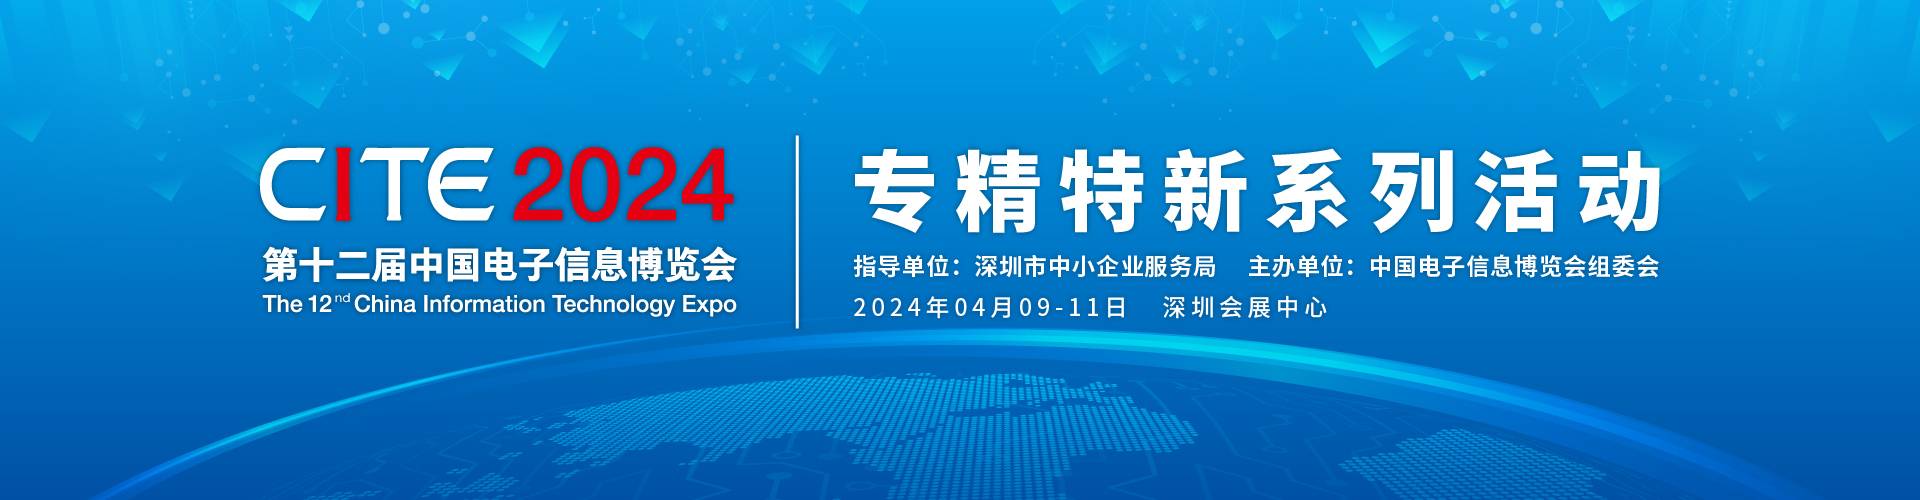 第十二届中国电子信息博览会 “专精特新” 系列活动